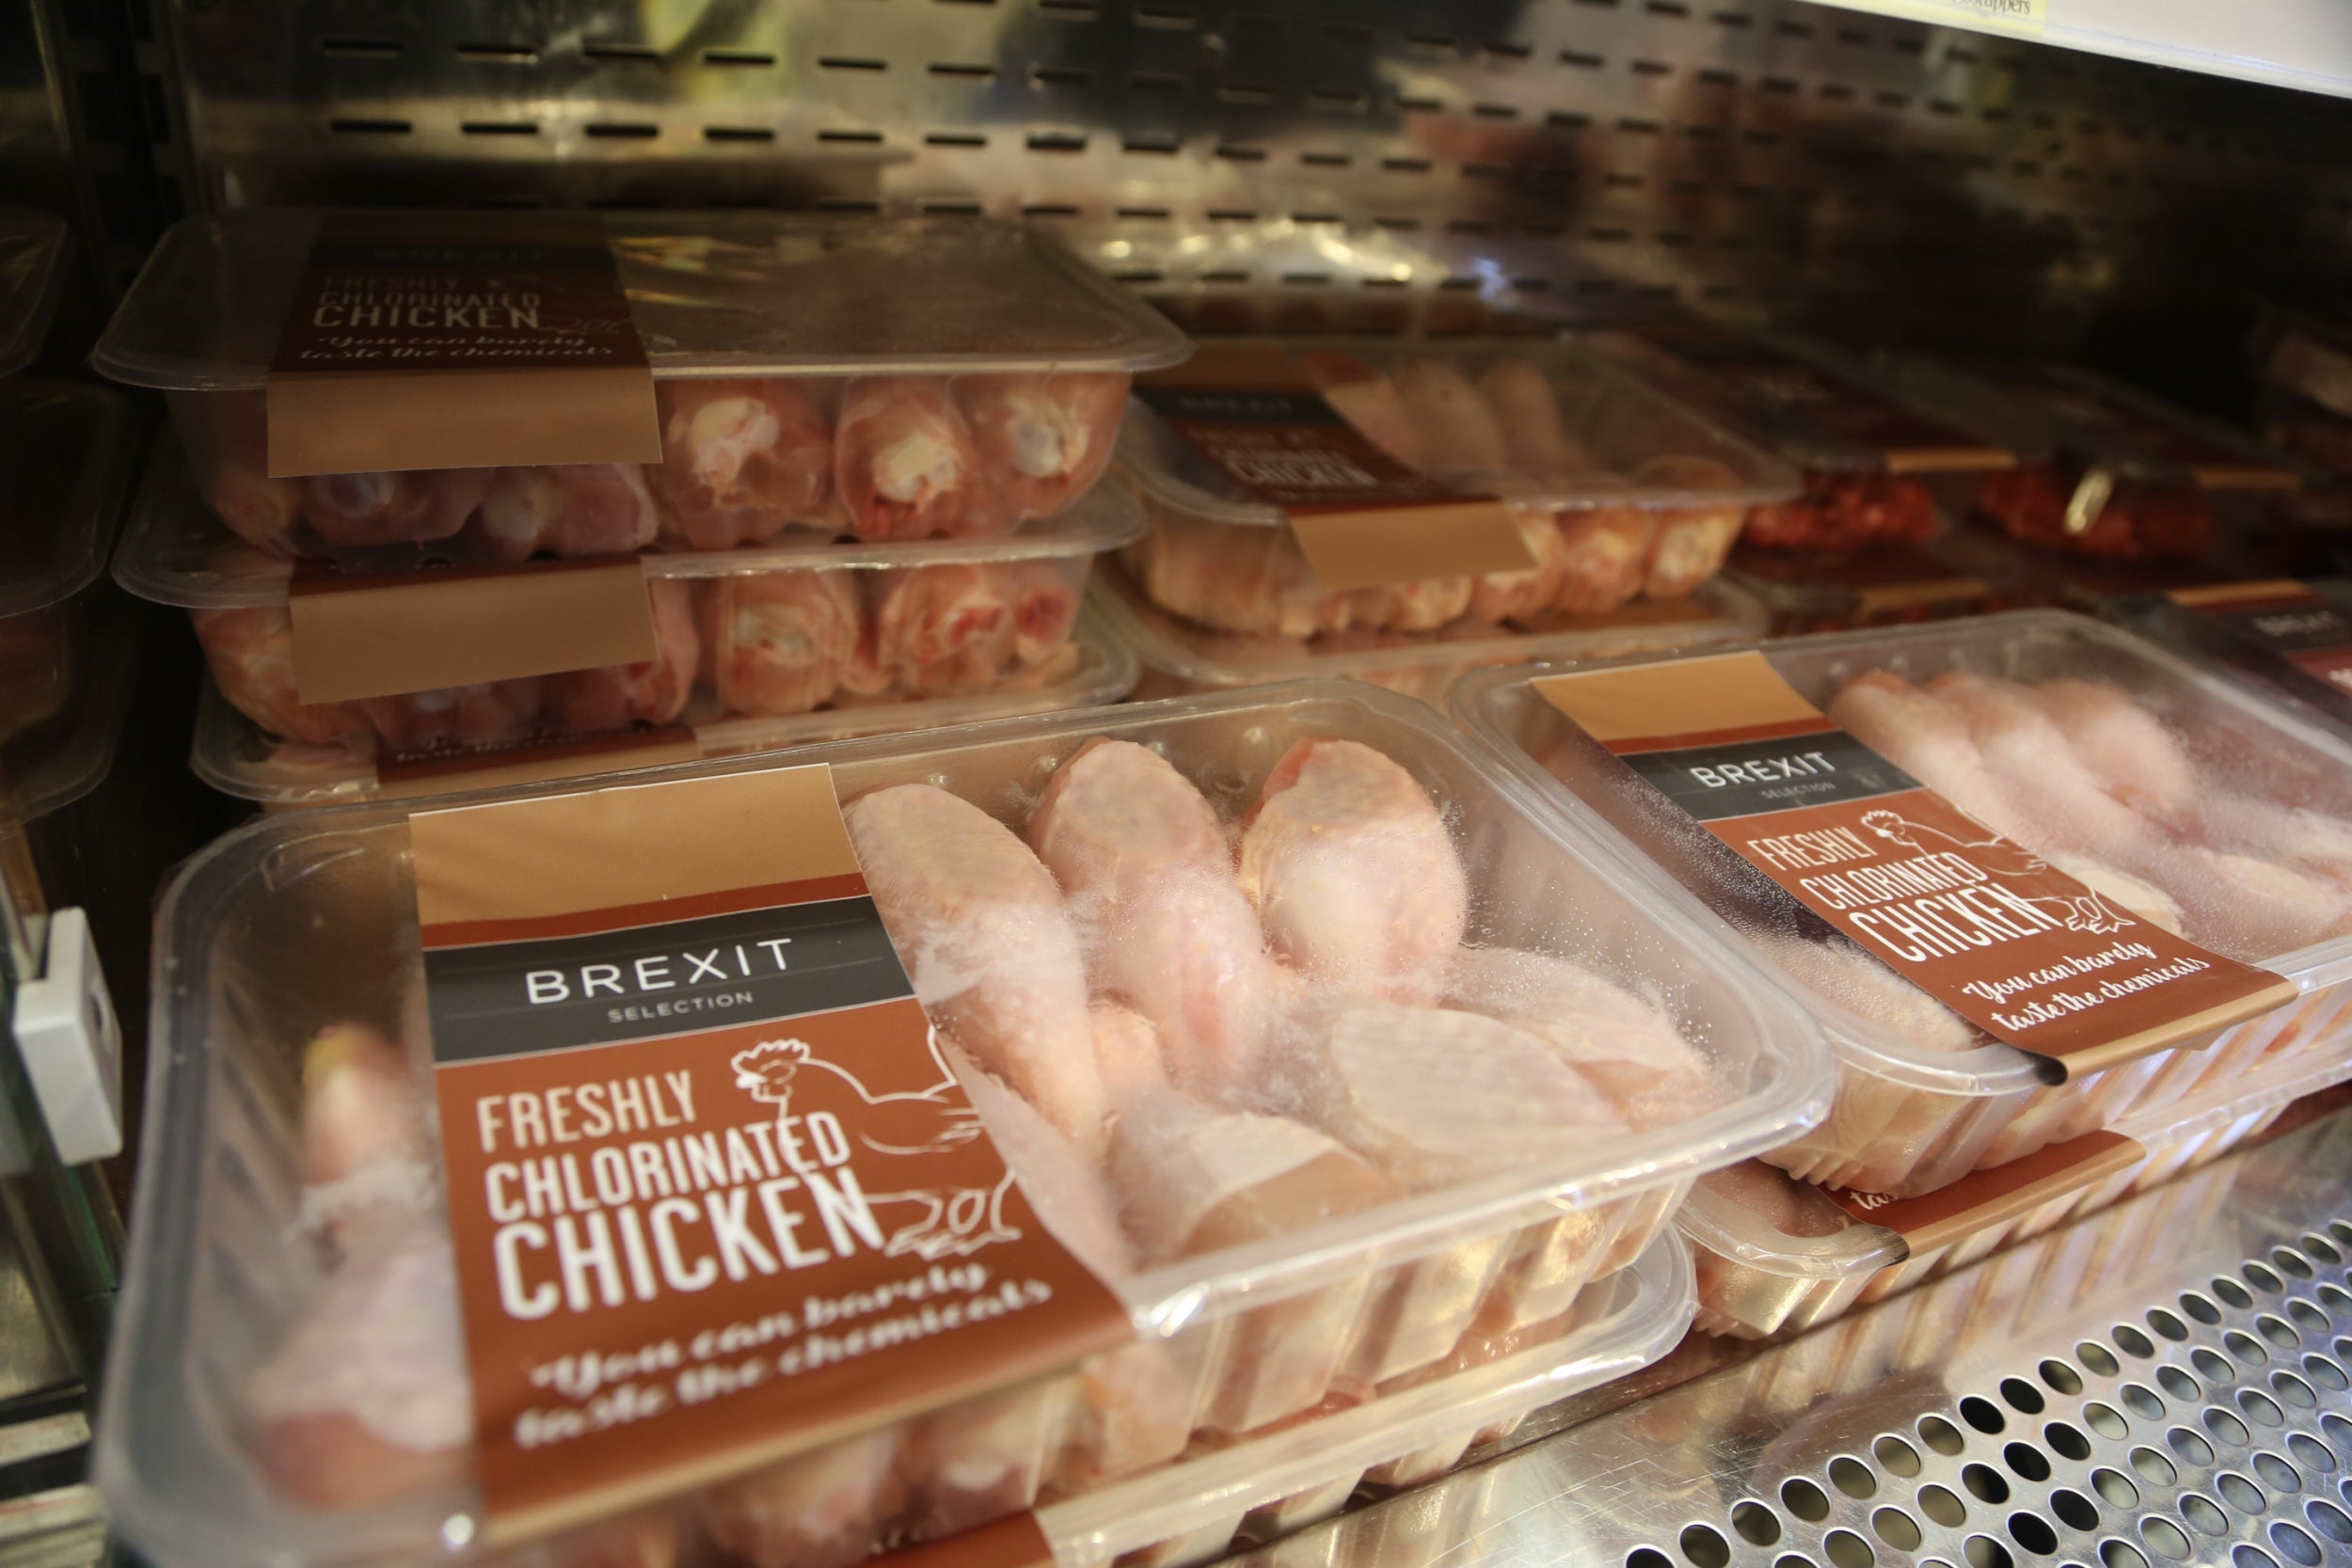 Paquetes de 'Brexit Selection Freshly Chloinated Chicken' se exhiben en la tienda emergente Brexit Minimart 'Costupper', creada por el grupo de campaña People's Vote, en noviembre de 2018.